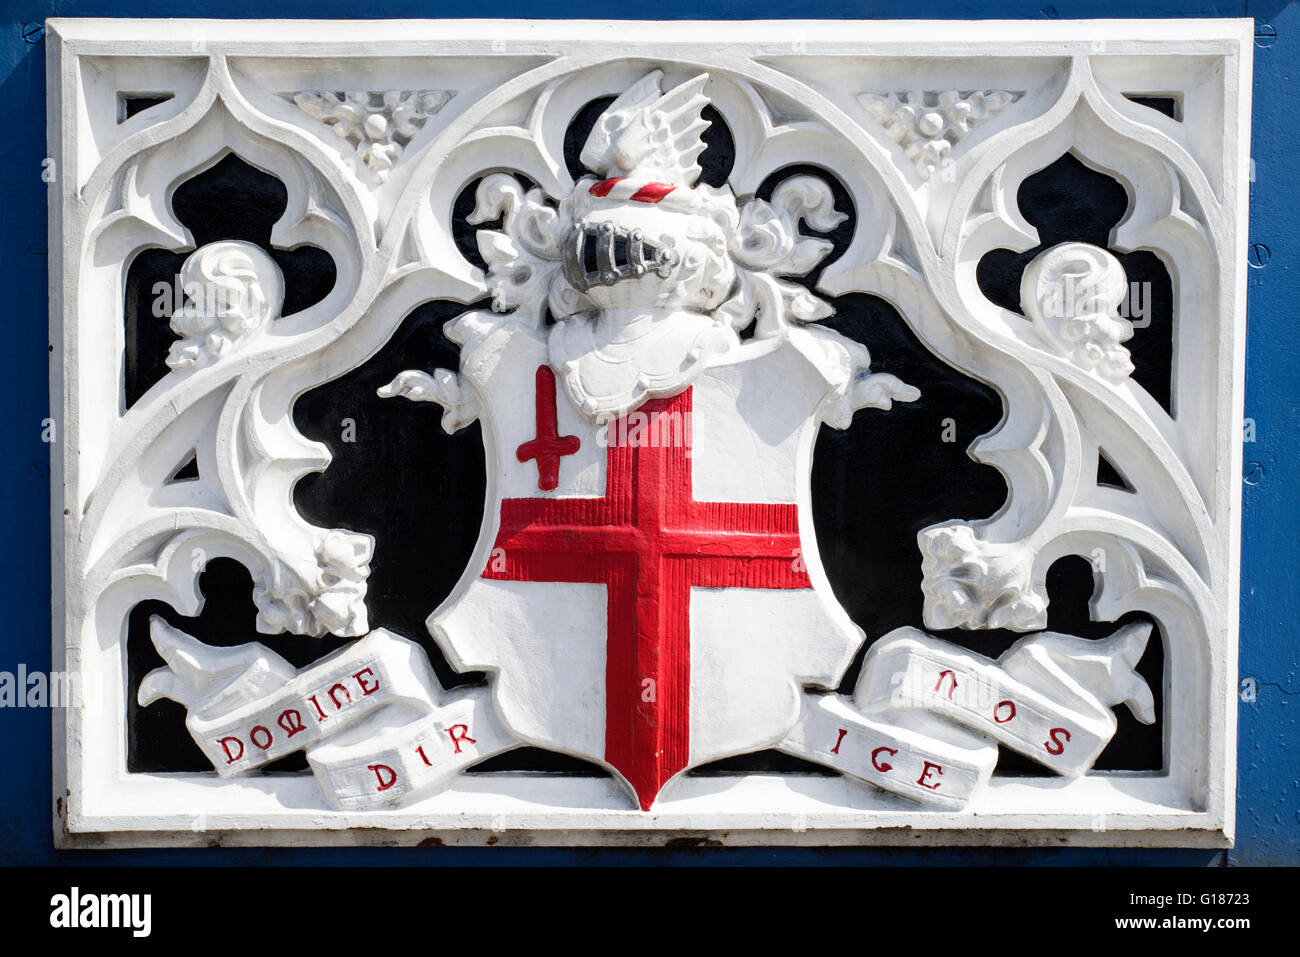 La ville de Londres Domine dirige nos devise sur Tower Bridge - la devise latine signifie seigneur de nous guider. Banque D'Images